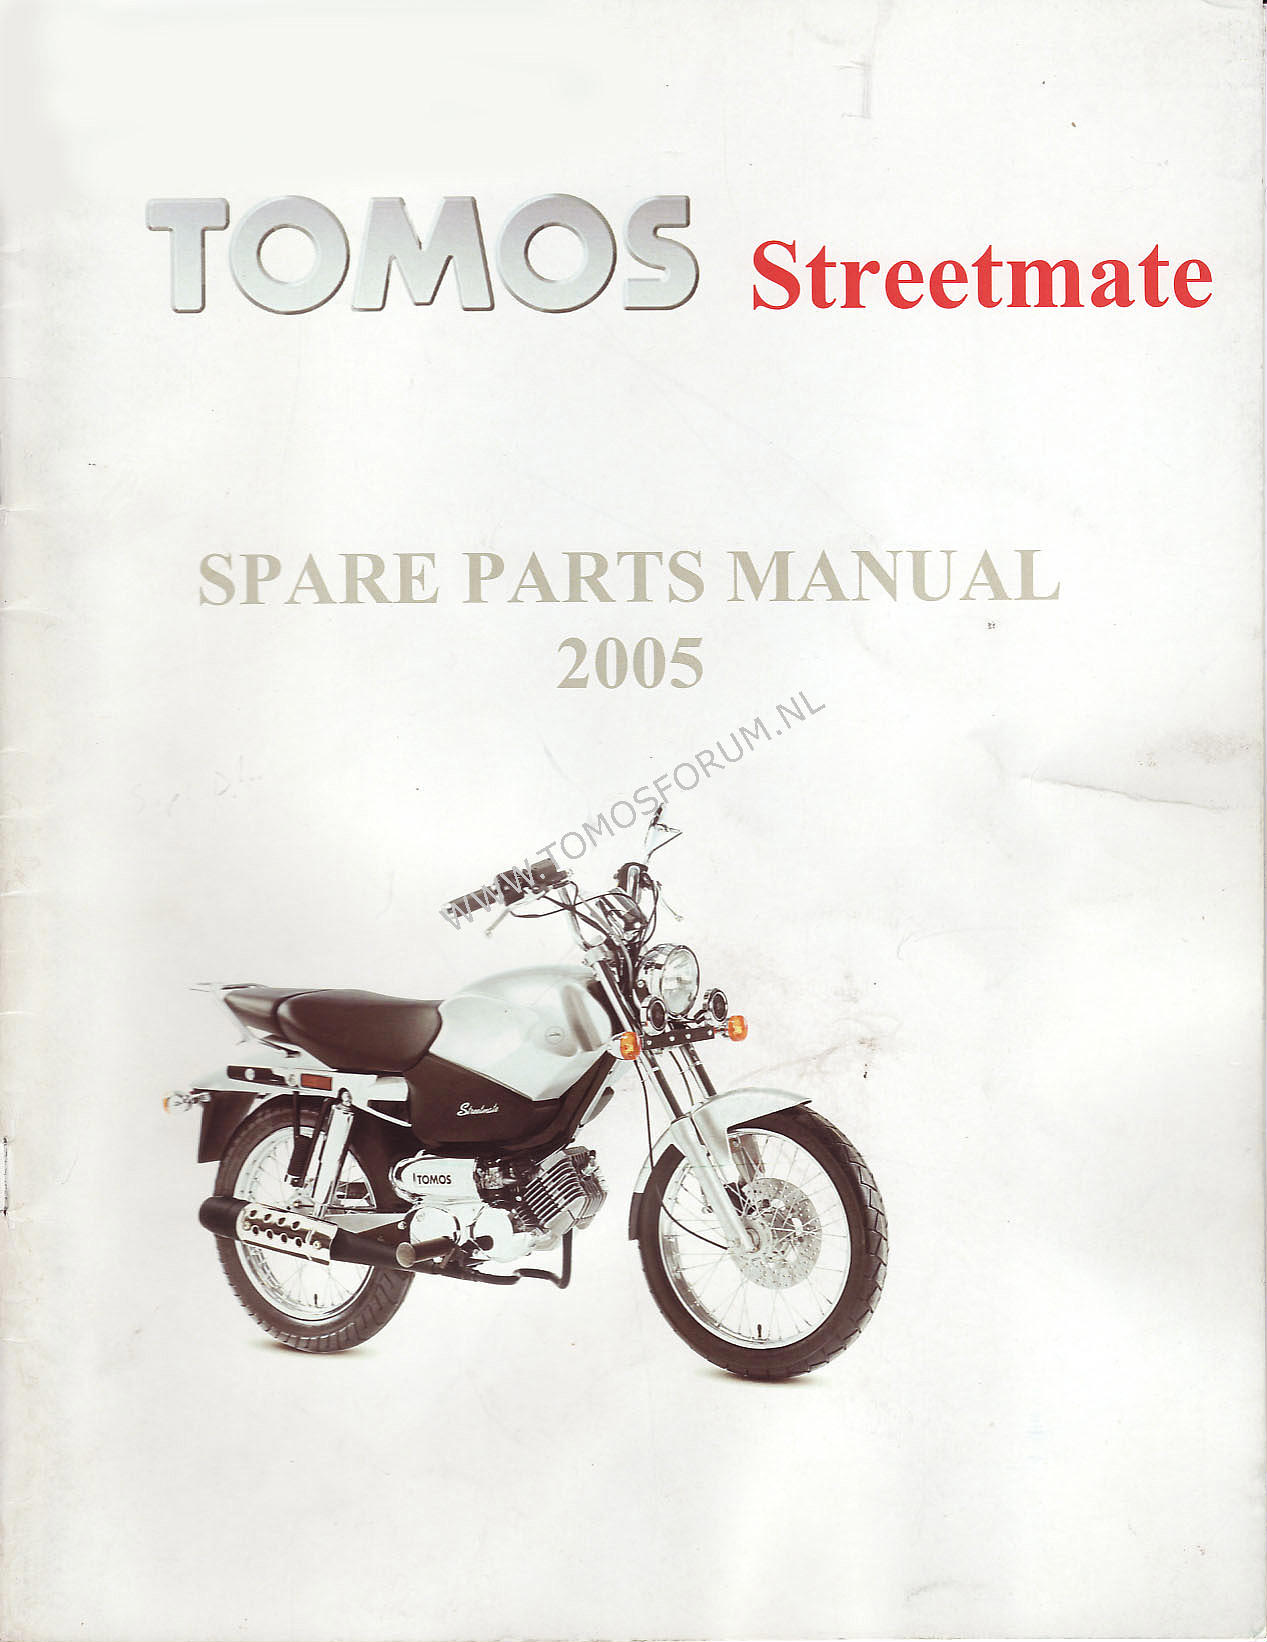 tomos_streetmate_parts_manual_01.jpg